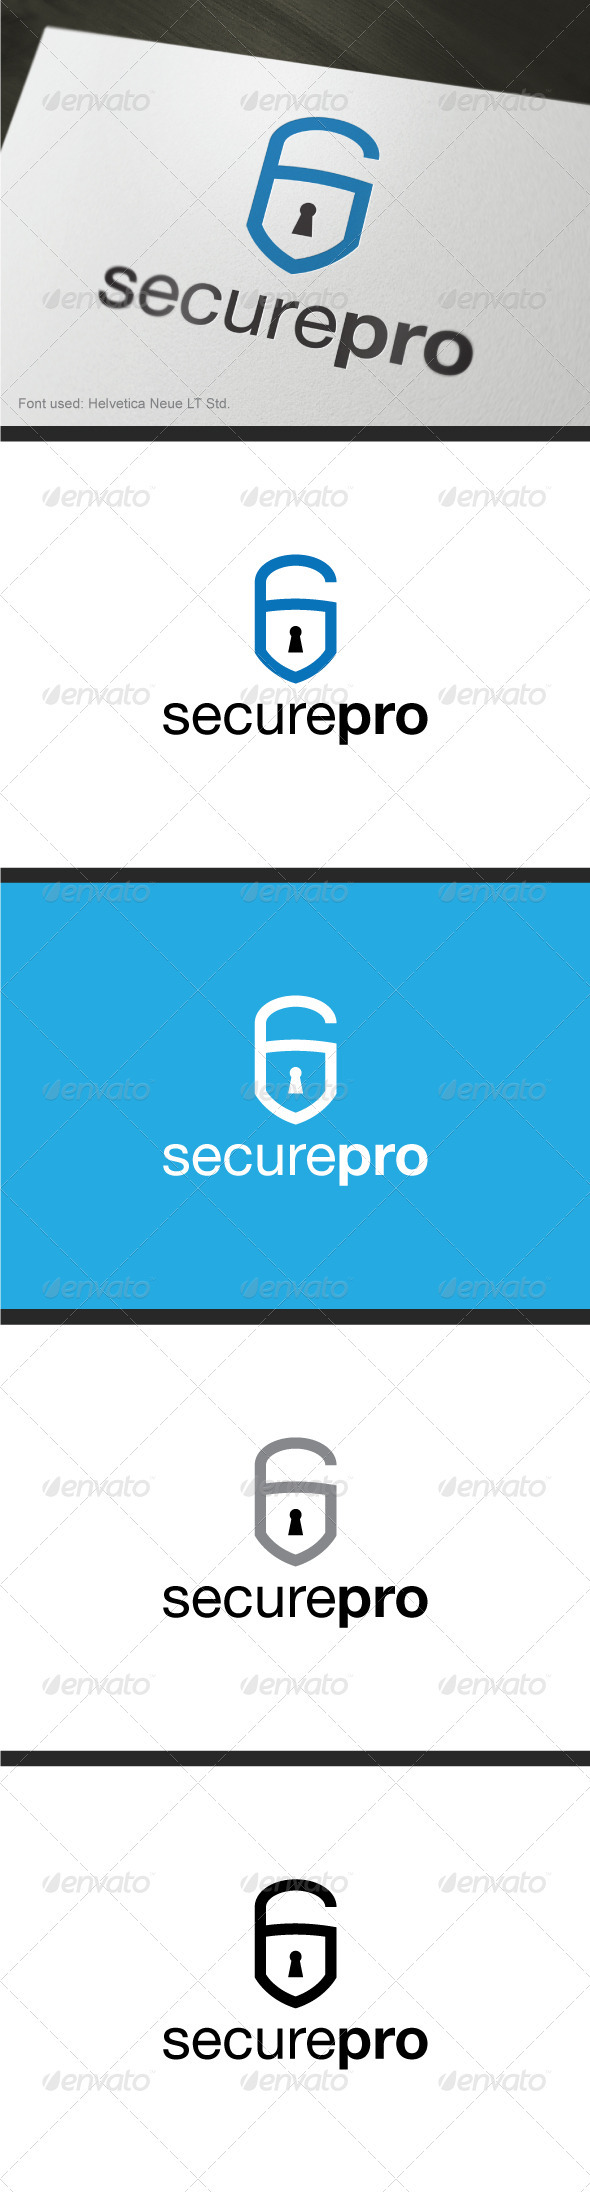 Securepro Logo